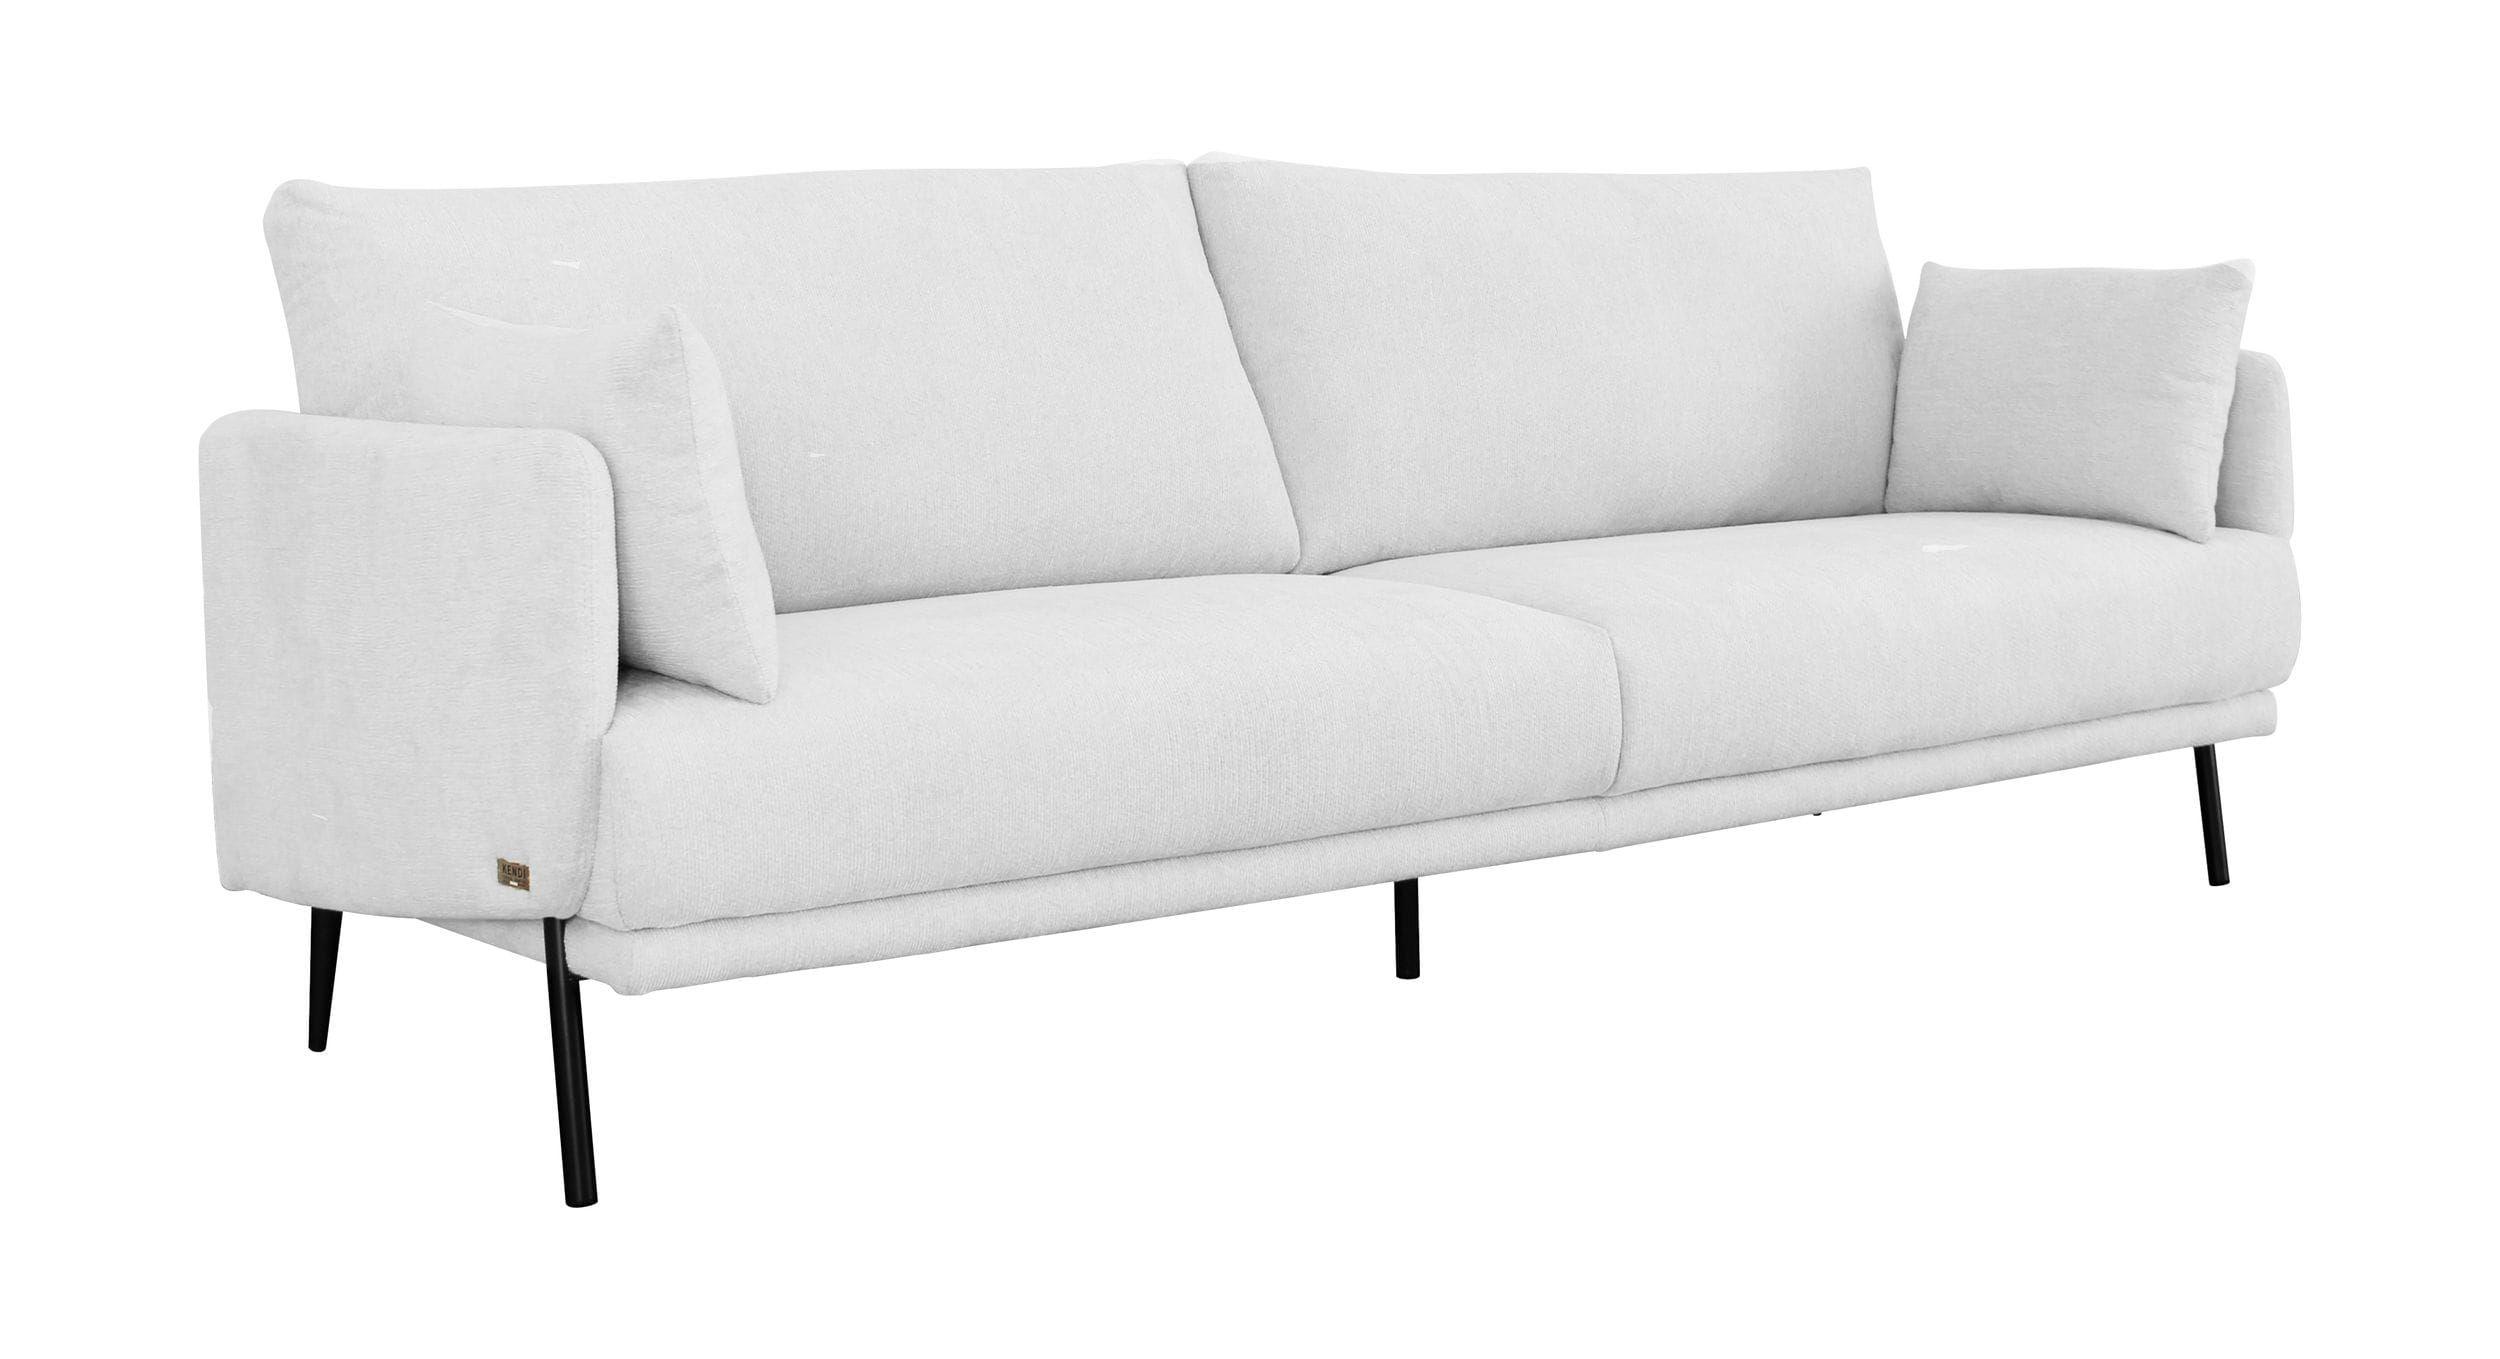 Contemporary, Modern Sofa VGKNK8586-WHT-S VGKNK8586-WHT-S in Gray Fabric